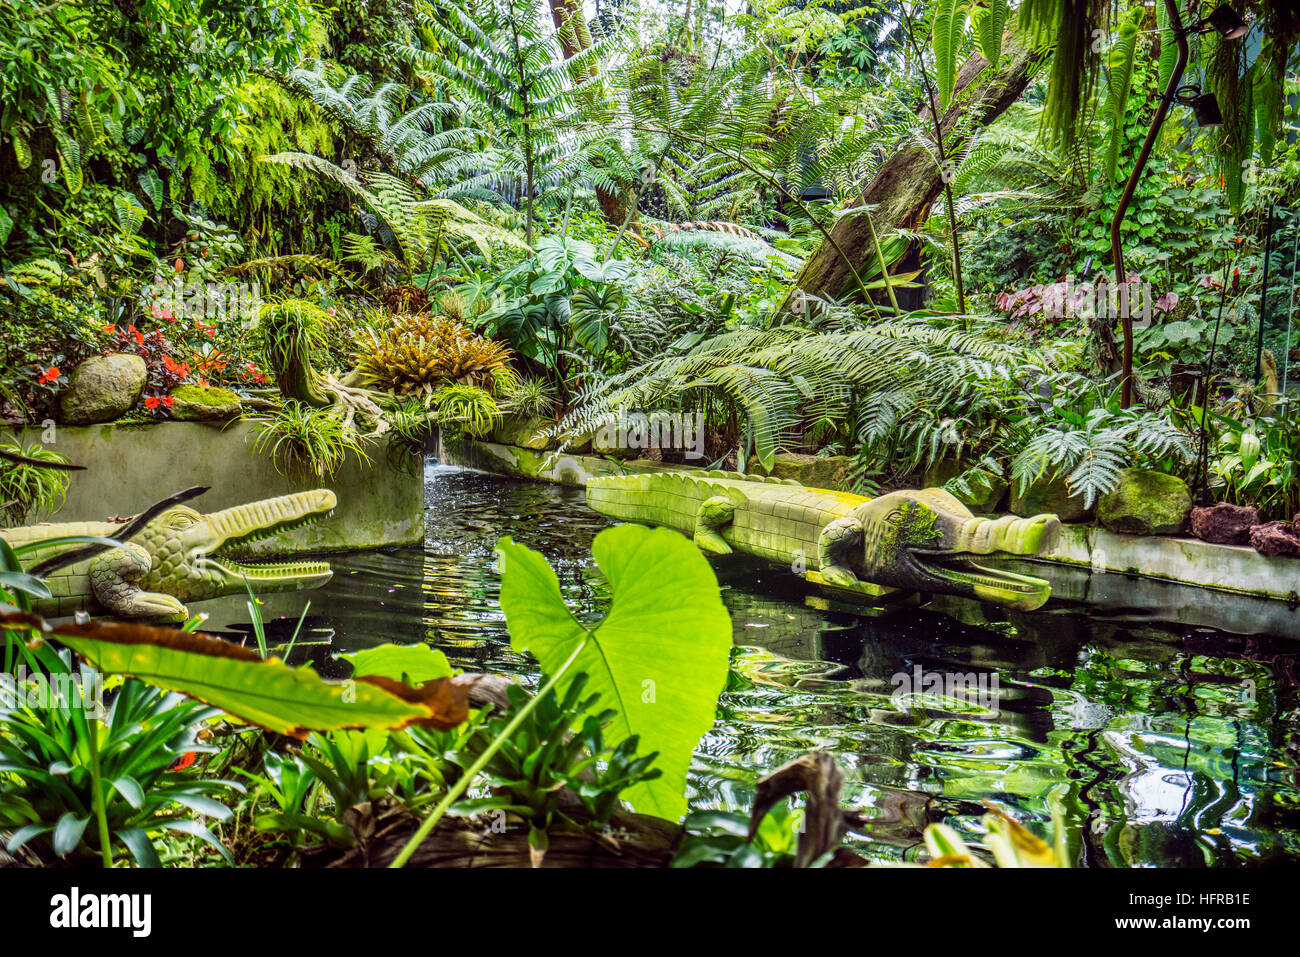 Singapor, jardines junto a la bahía, 'Pale cocodrilos' tallas de madera filipina en el Jardín Secreto del Bosque Nuboso casa verde Foto de stock